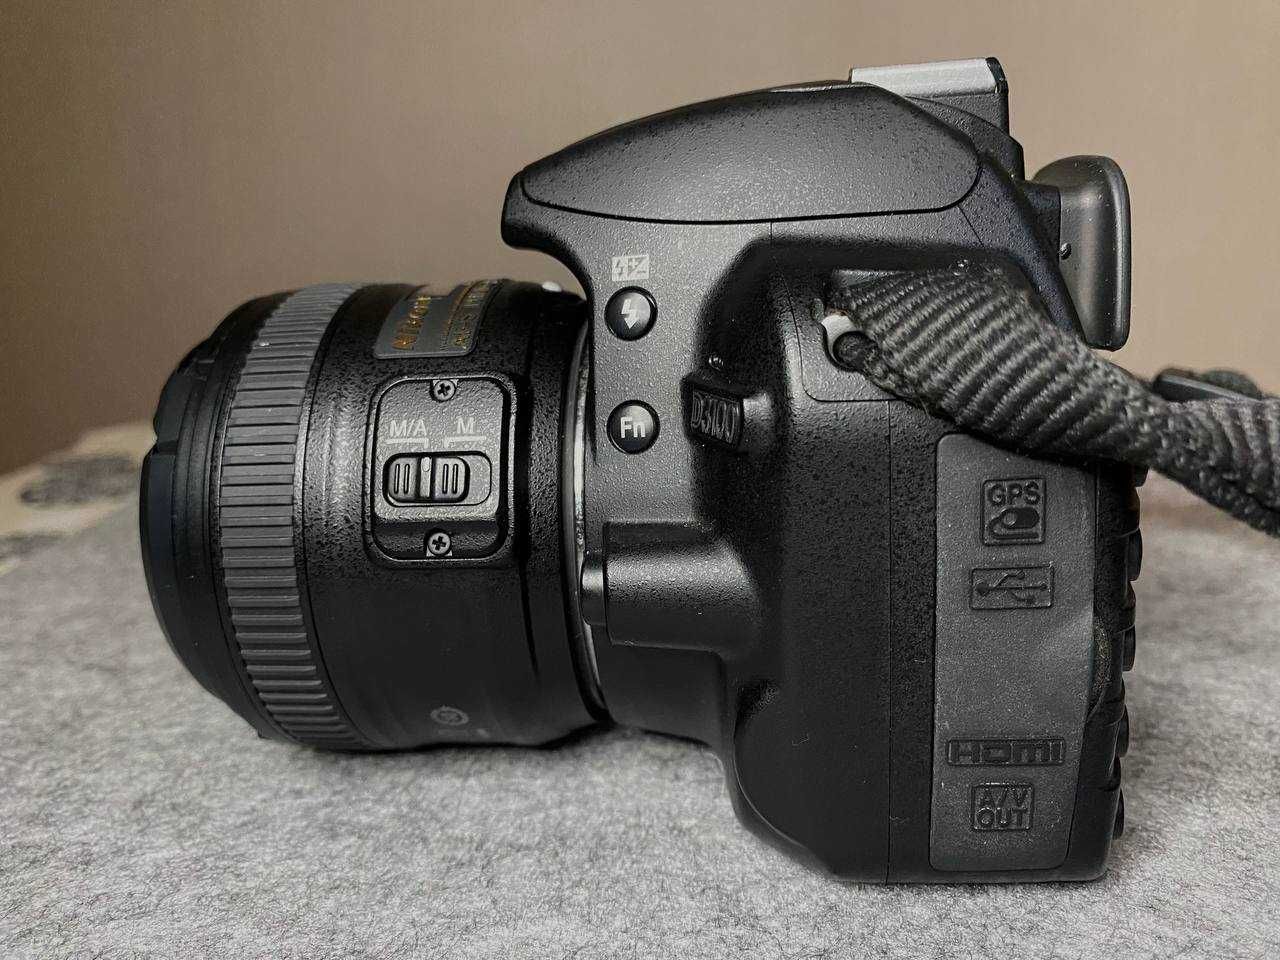 Фотоаппарат Nikon d3100 
Объектив Nikon 18-105mm